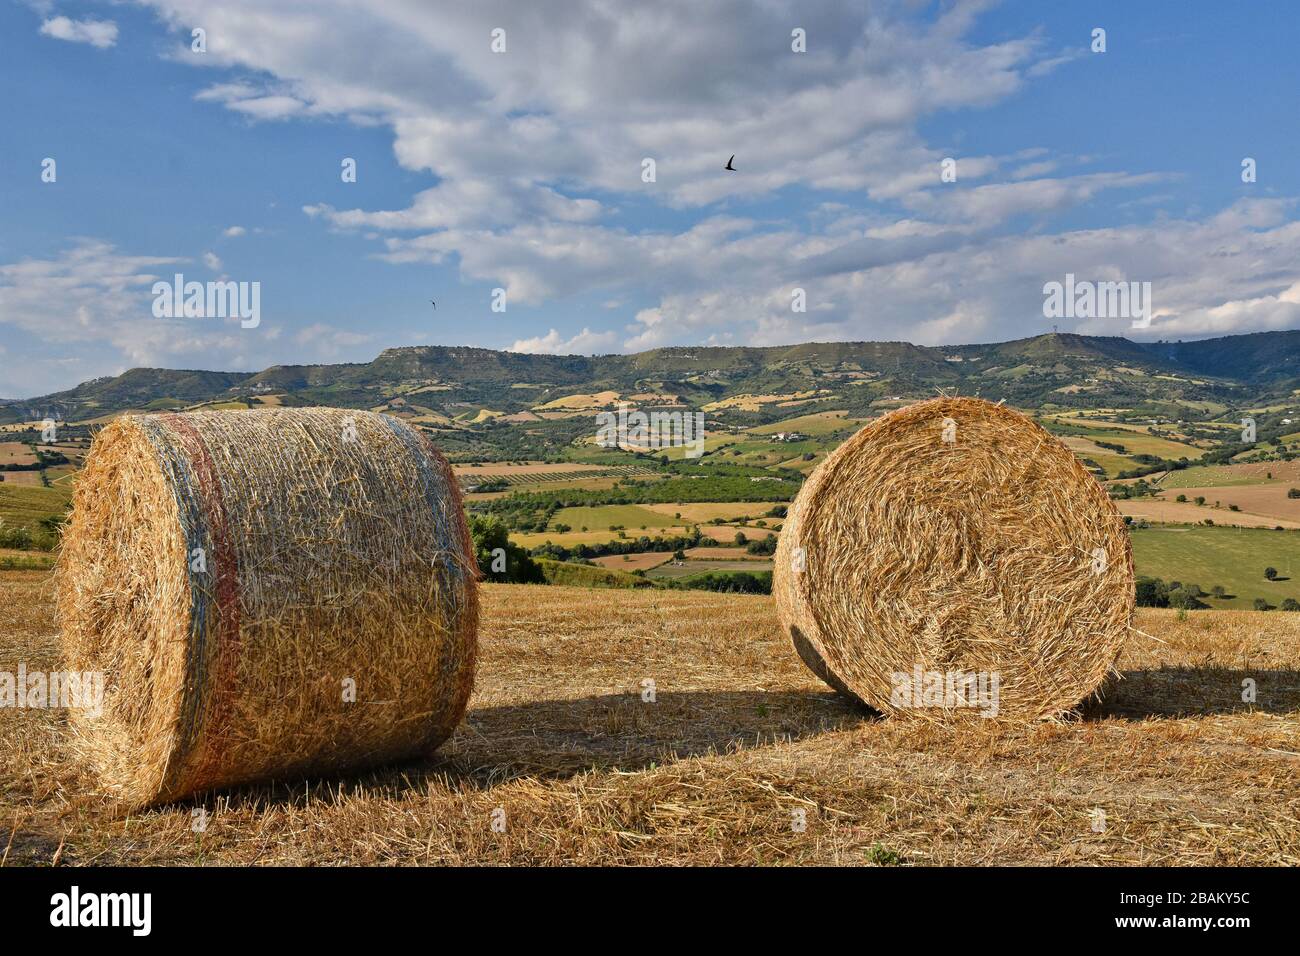 Vista panorámica de la campiña de Palazzolo Acreide, un pueblo medieval en la provincia de Siracusa, Italia Foto de stock